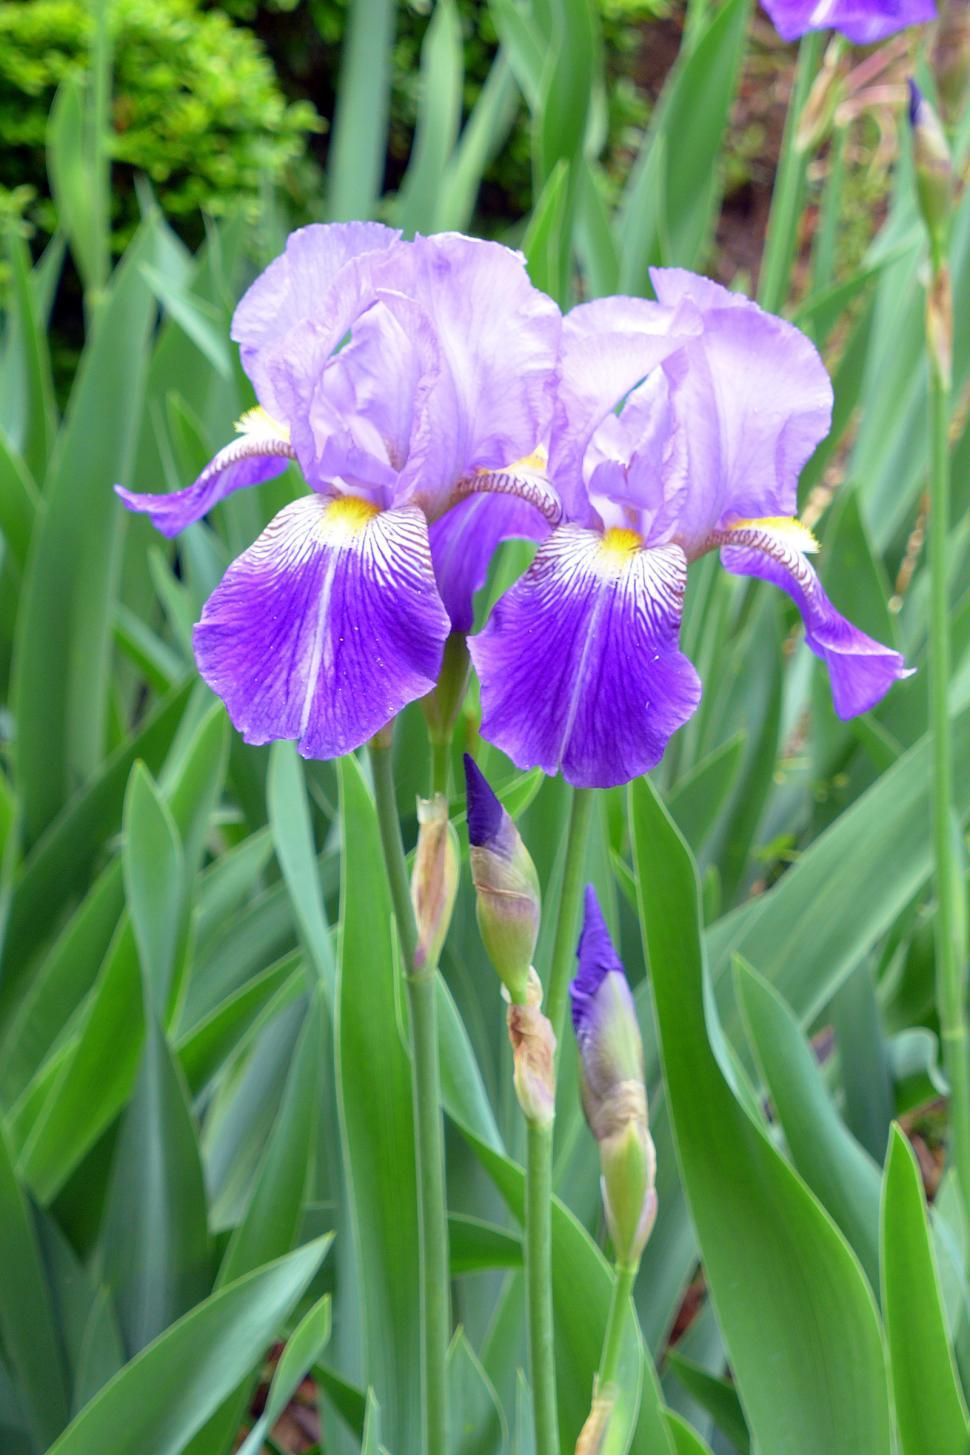 Free Image of Pair of Purple Iris Flowers 